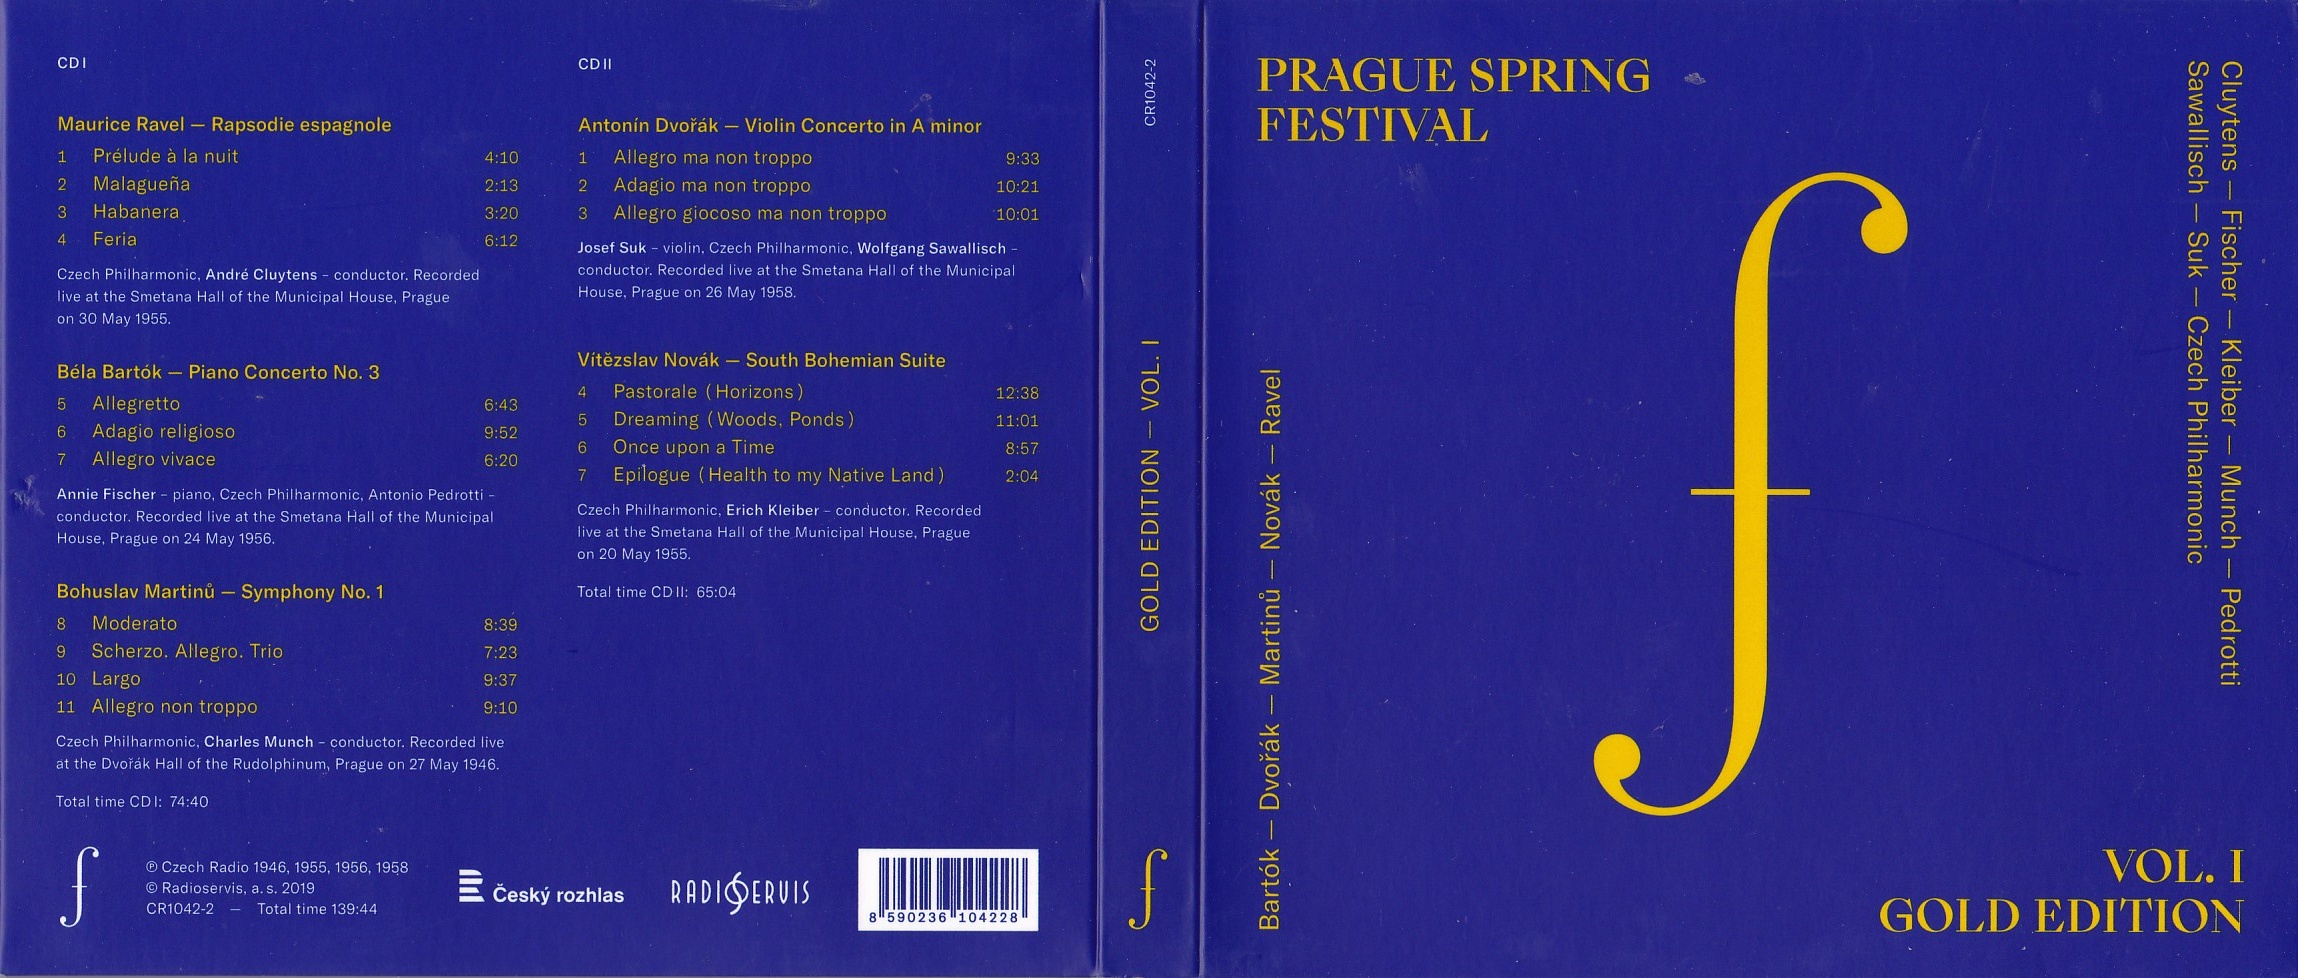 Prague Spring Festival Gold Edition Vol. I; 